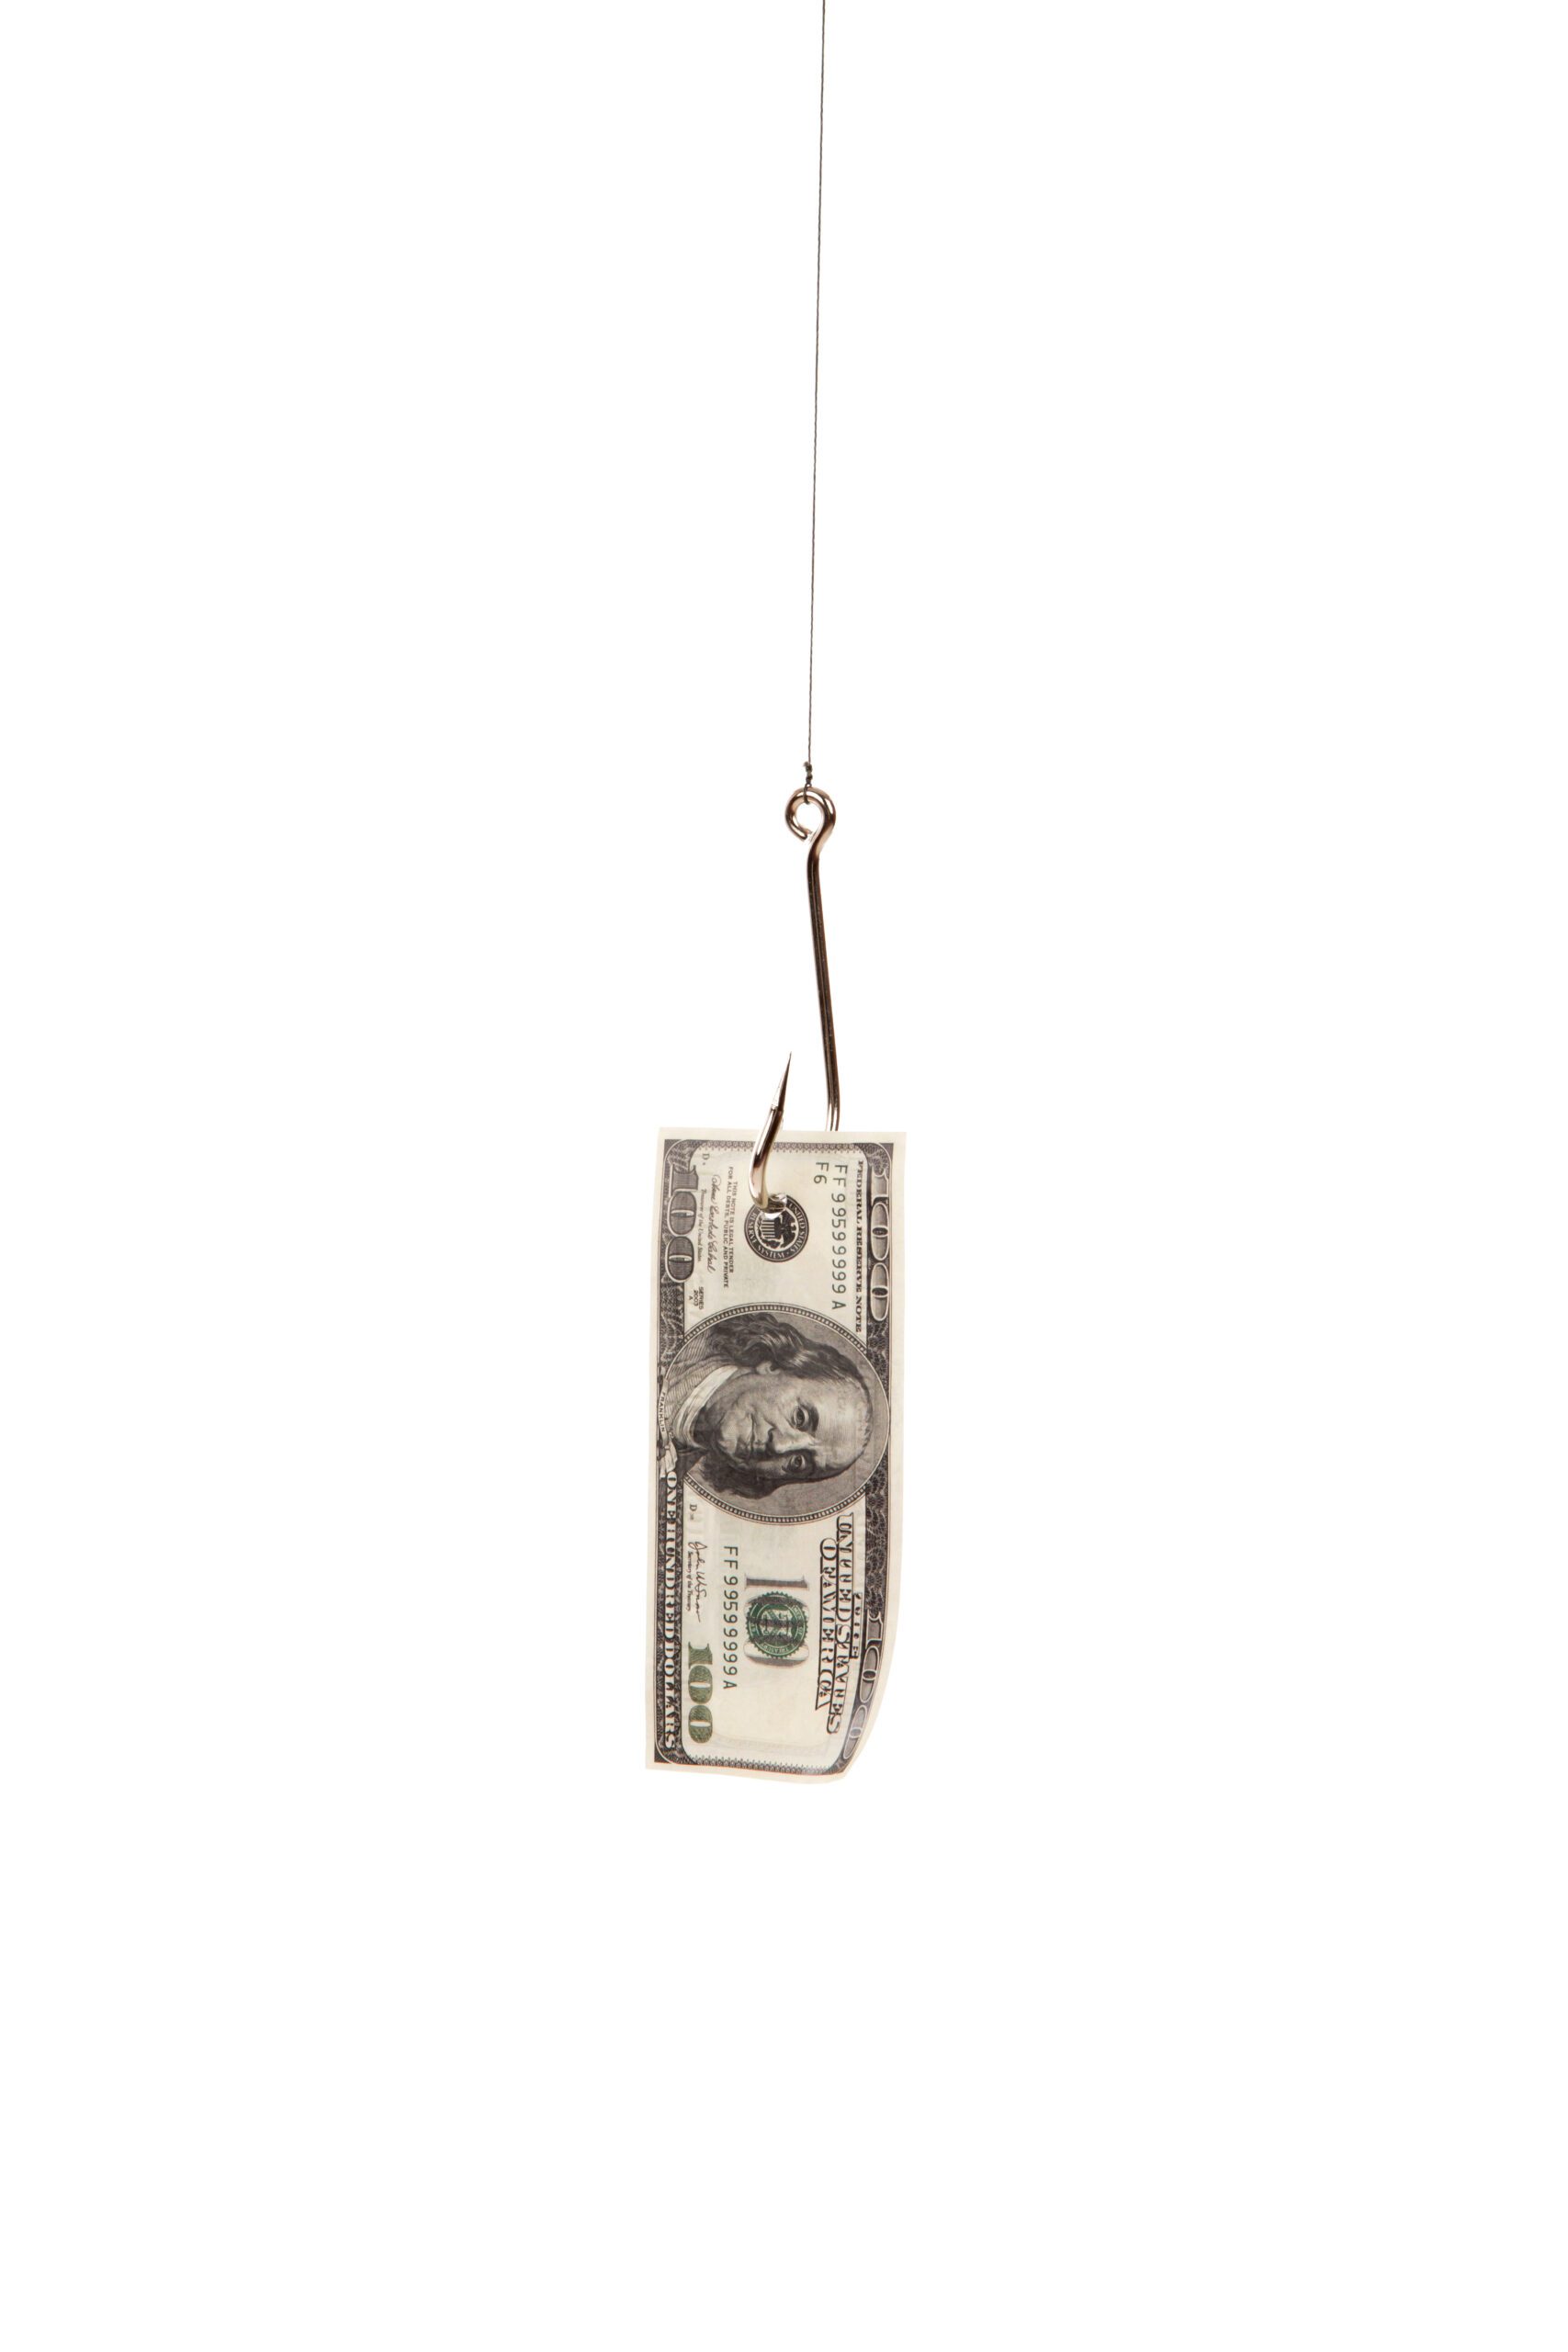 unclaimed money 100 dollar bill on fishing hook